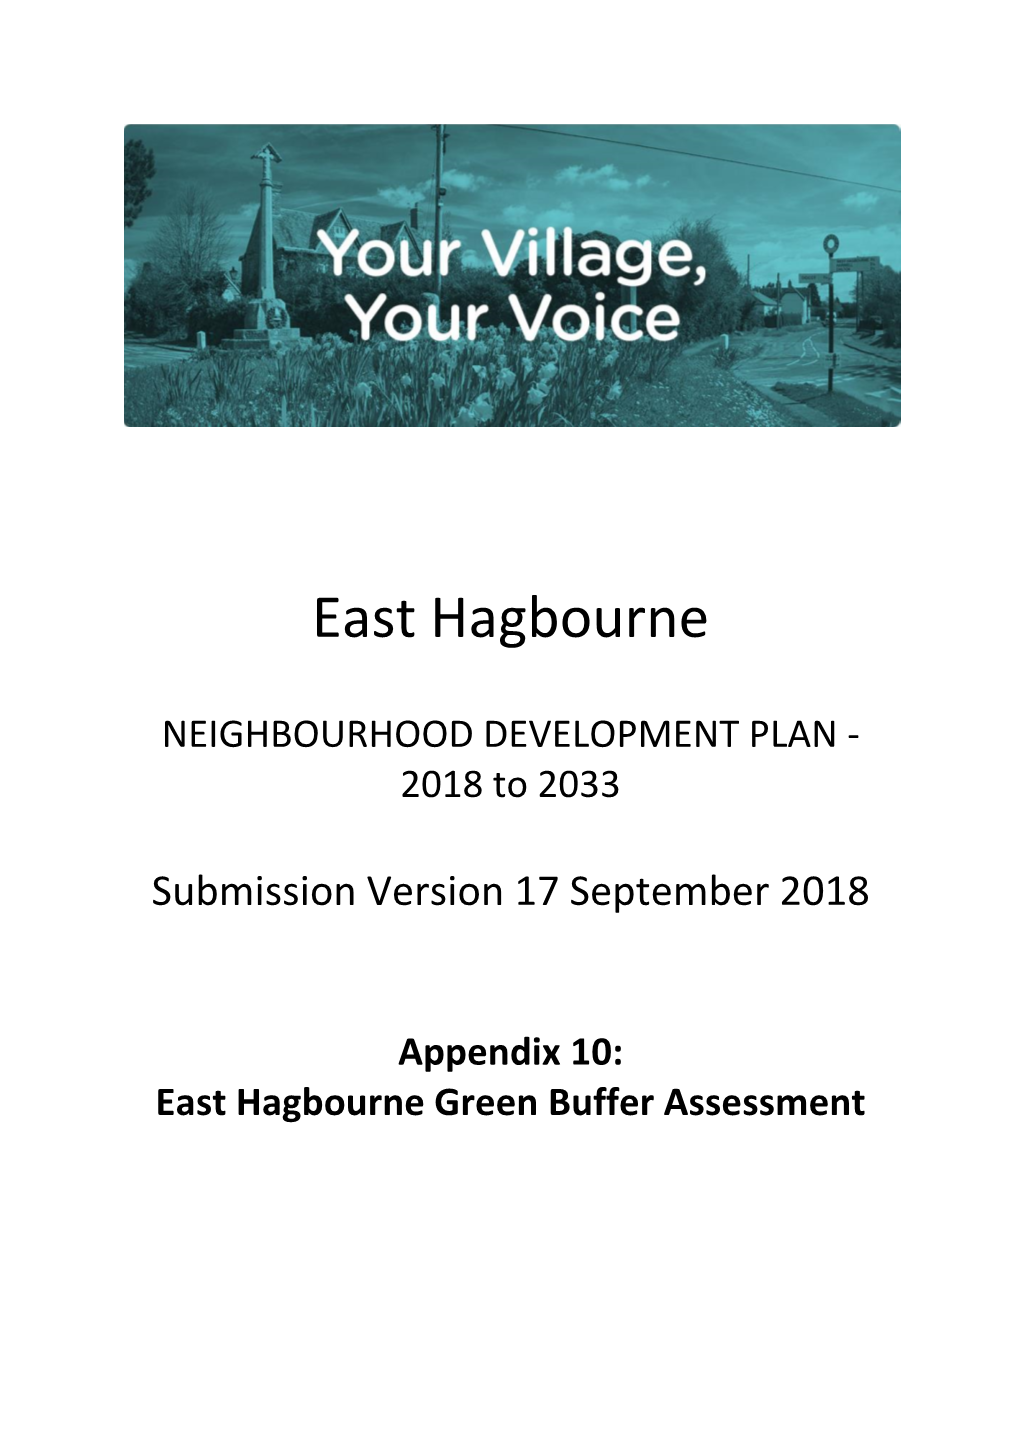 NEIGHBOURHOOD DEVELOPMENT PLAN - 2018 to 2033